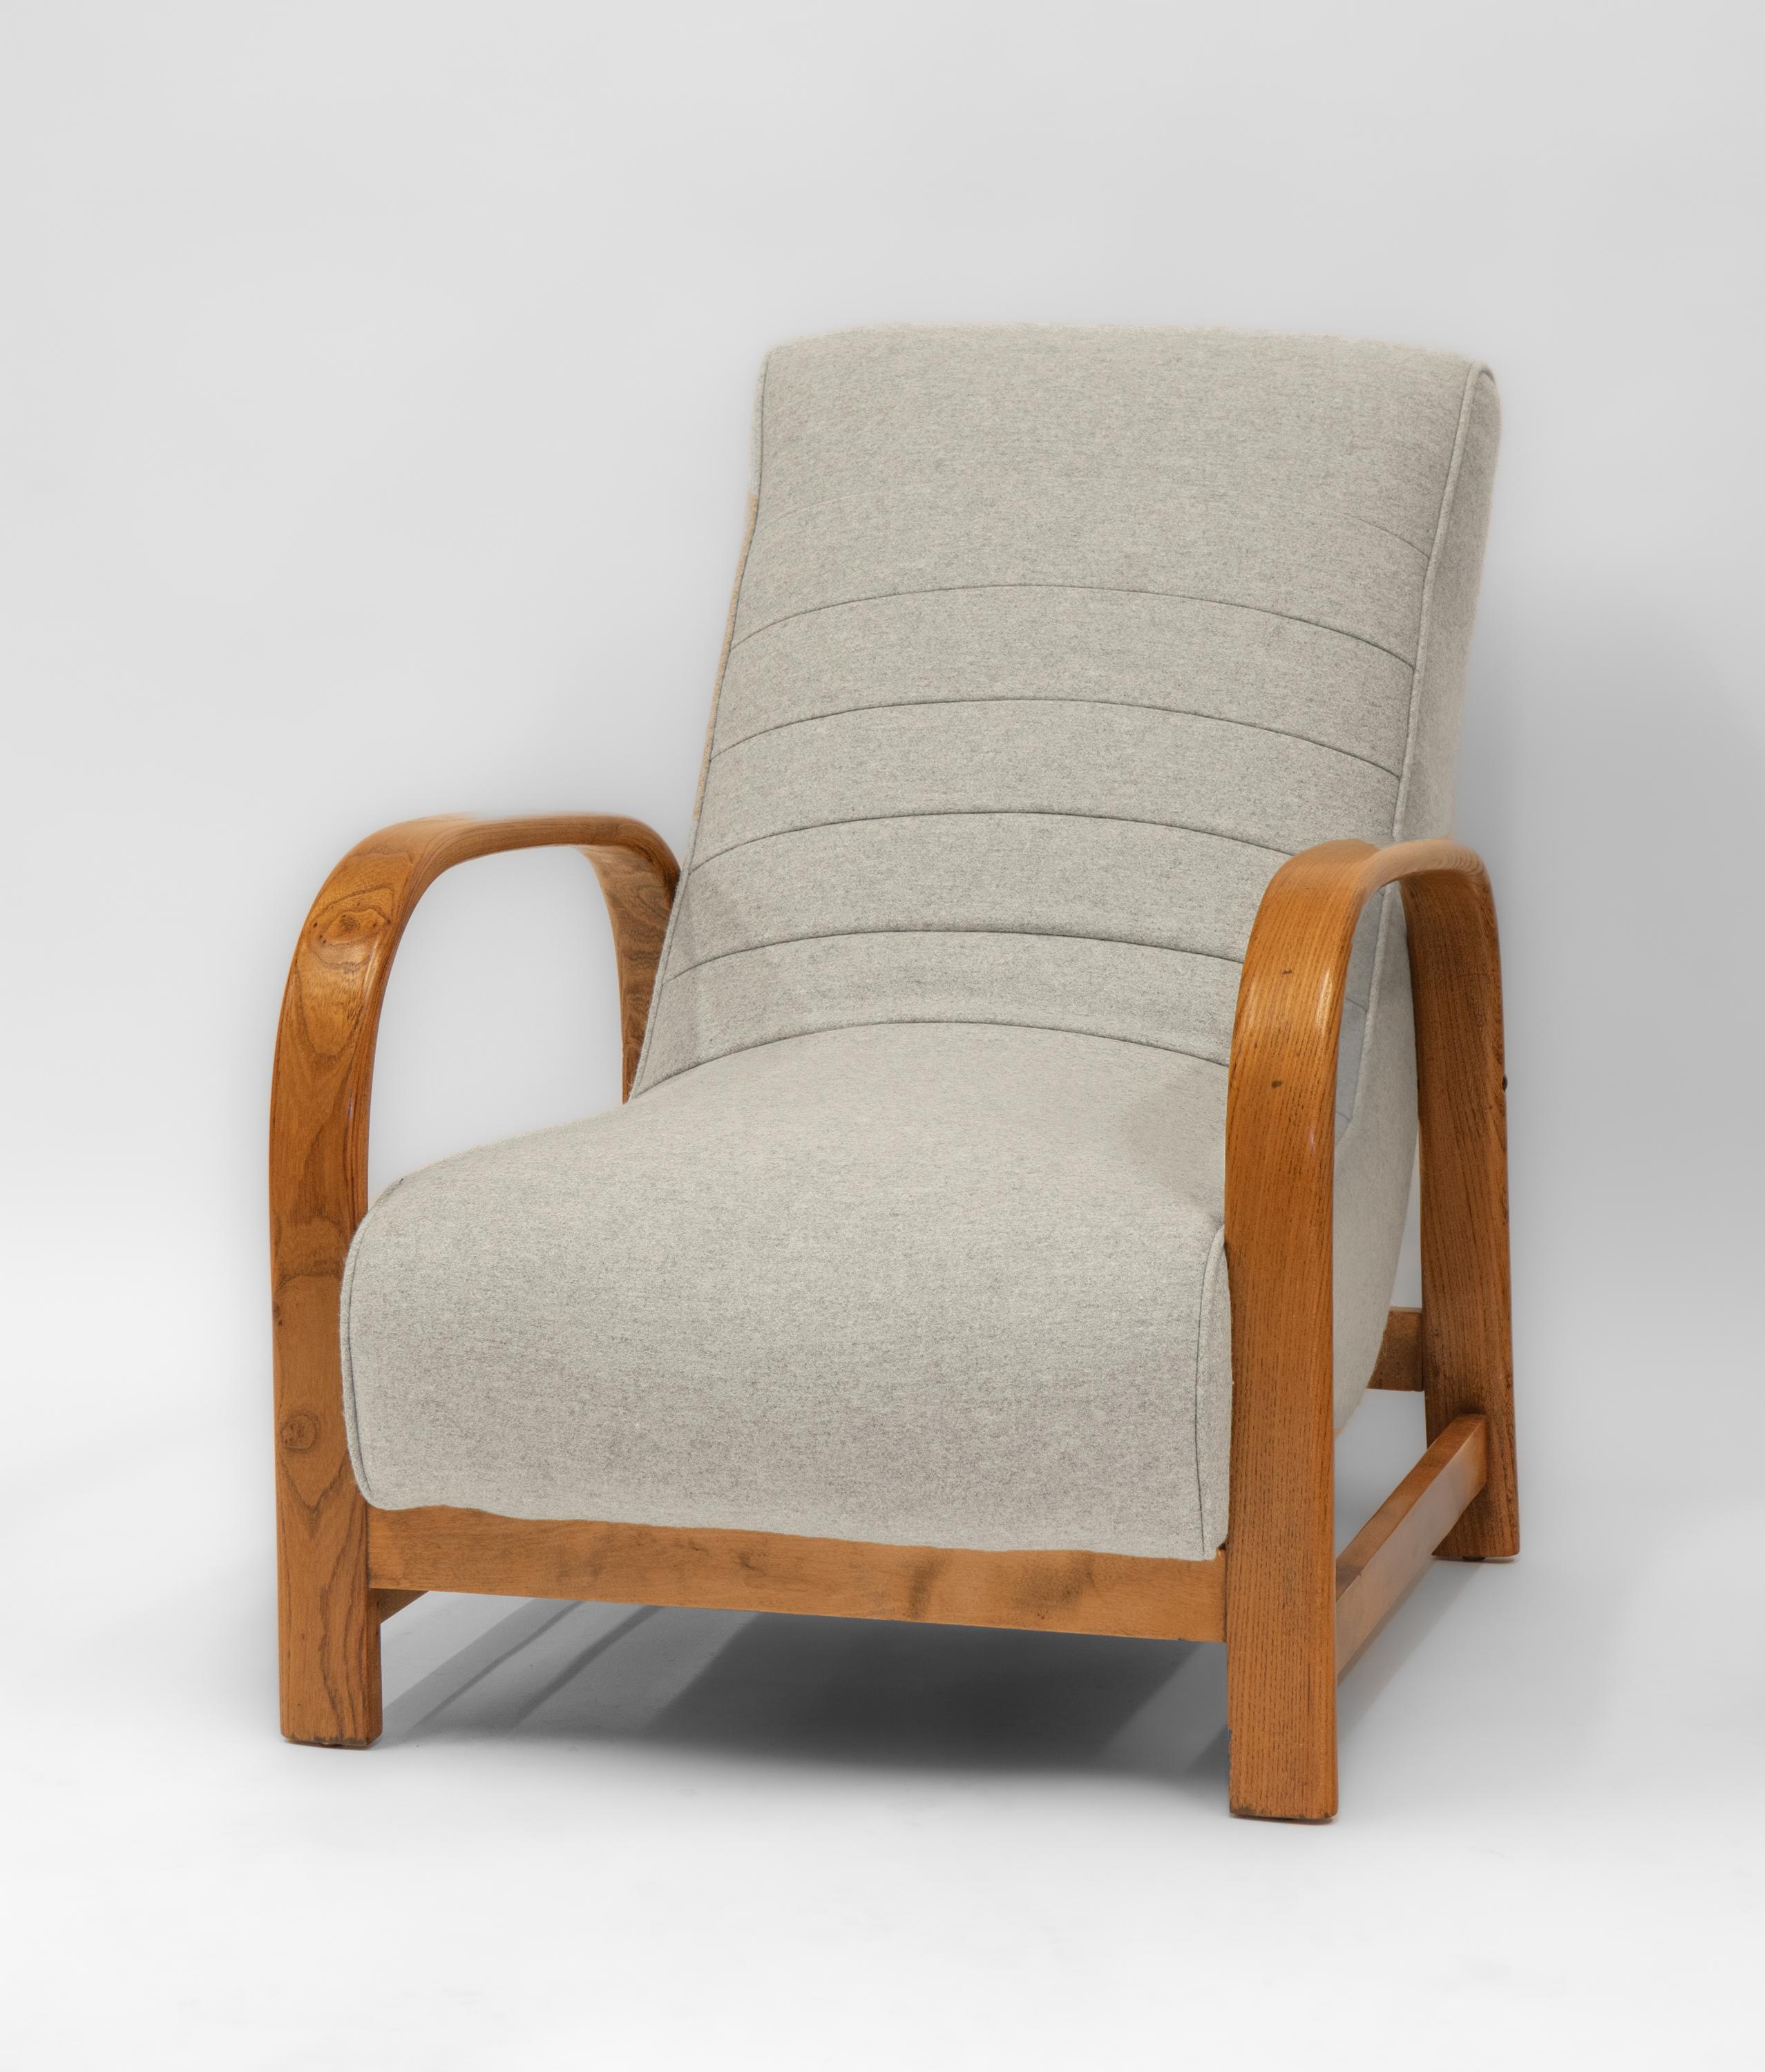 
Chaise de salon Art déco en orme, bois courbé et hêtre, tapissée de laine gris clair de Bute. Vers les années 1930.

Les frais de livraison sont INCLUS dans le prix pour toutes les régions de l'Angleterre continentale et du Pays de Galles. 

Les